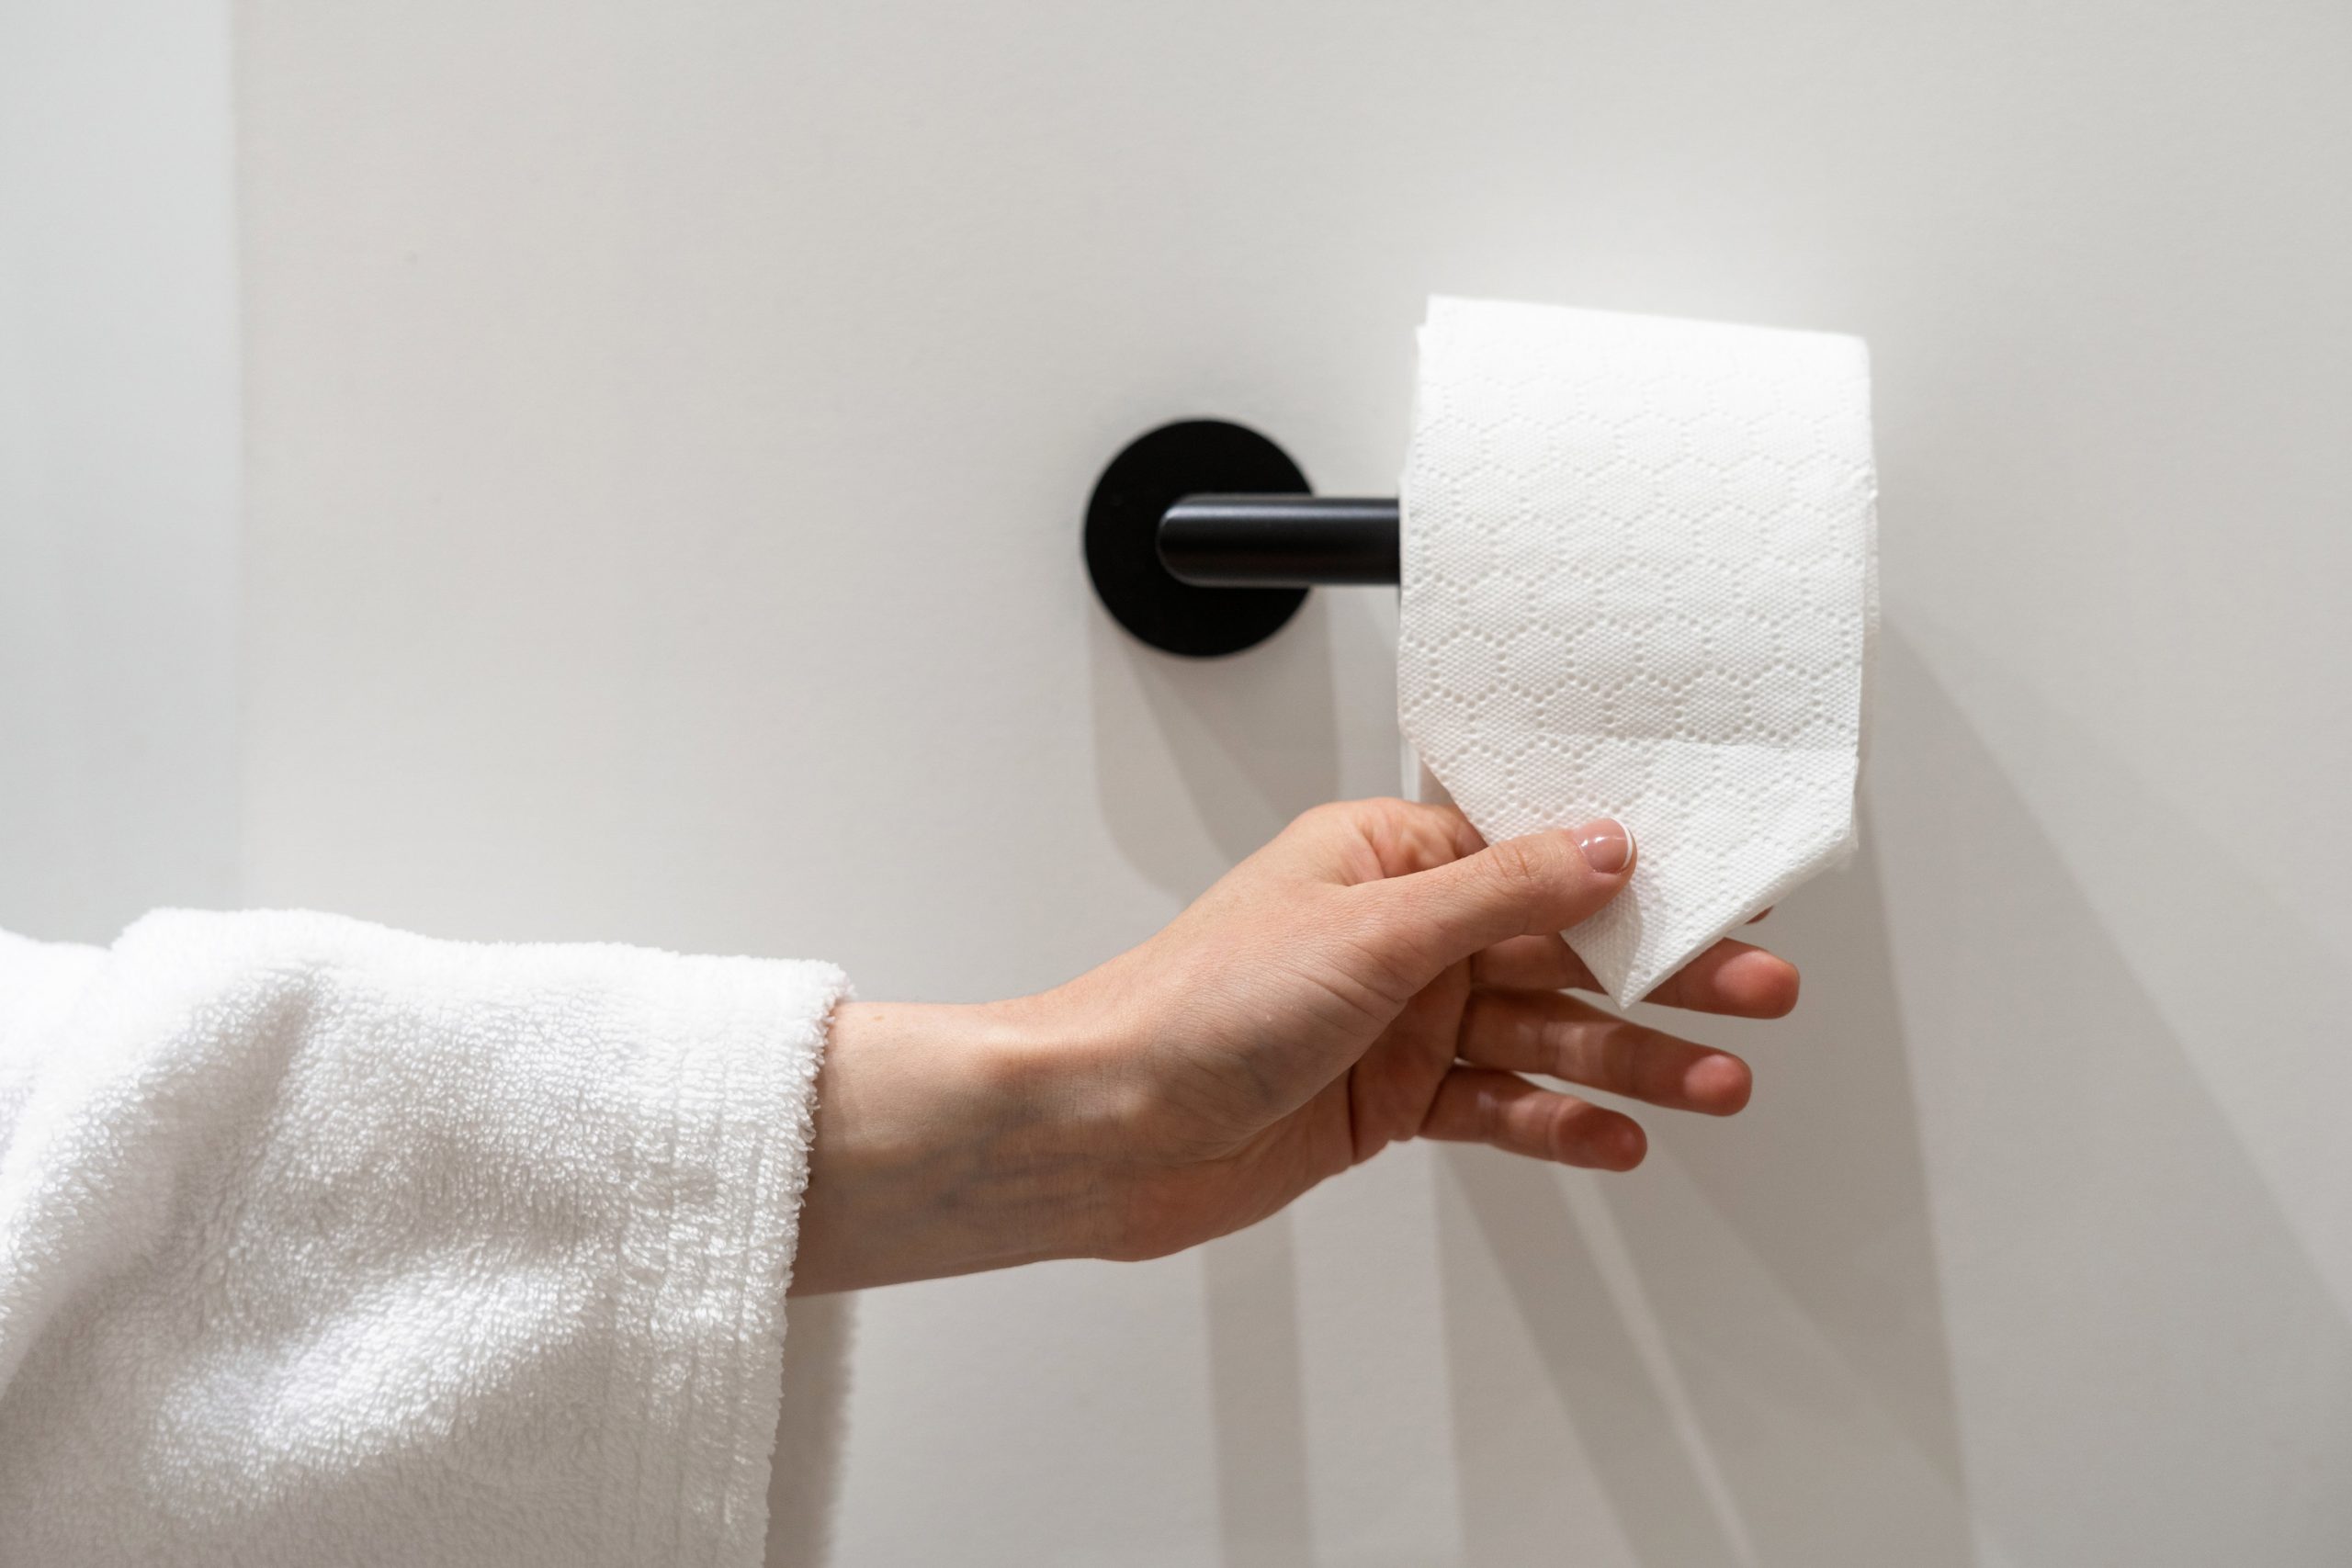 Гигиена туалетных процедур: как нужно вытирать попу, сидя или стоя